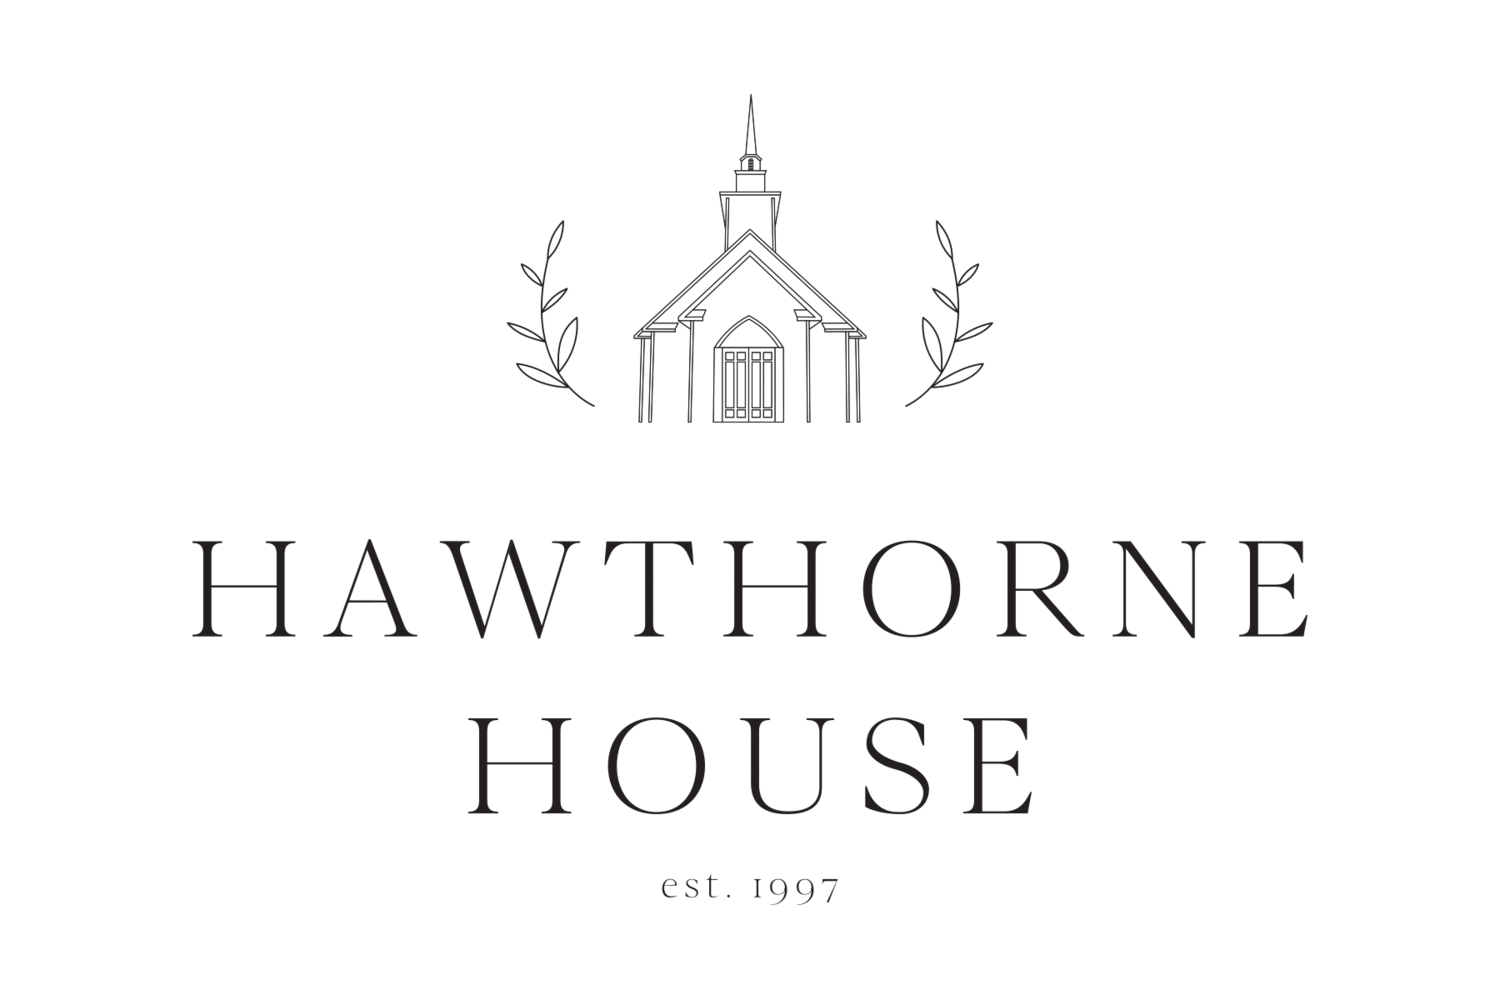 Hawthorne House